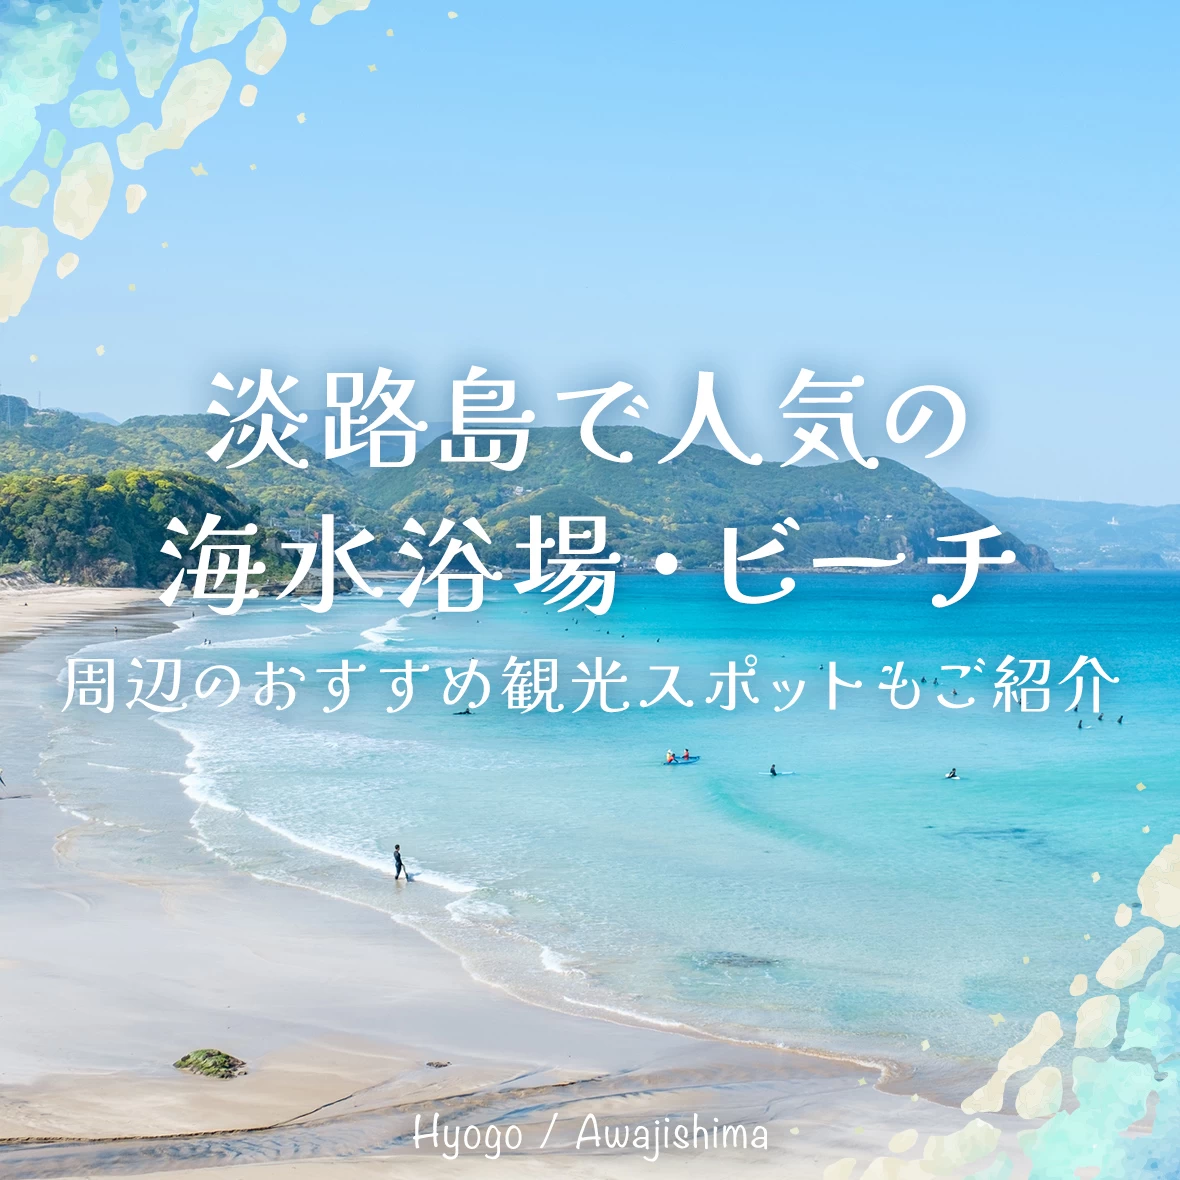 【兵庫】淡路島で人気の海水浴場・ビーチ8選 周辺のおすすめ観光スポットもご紹介